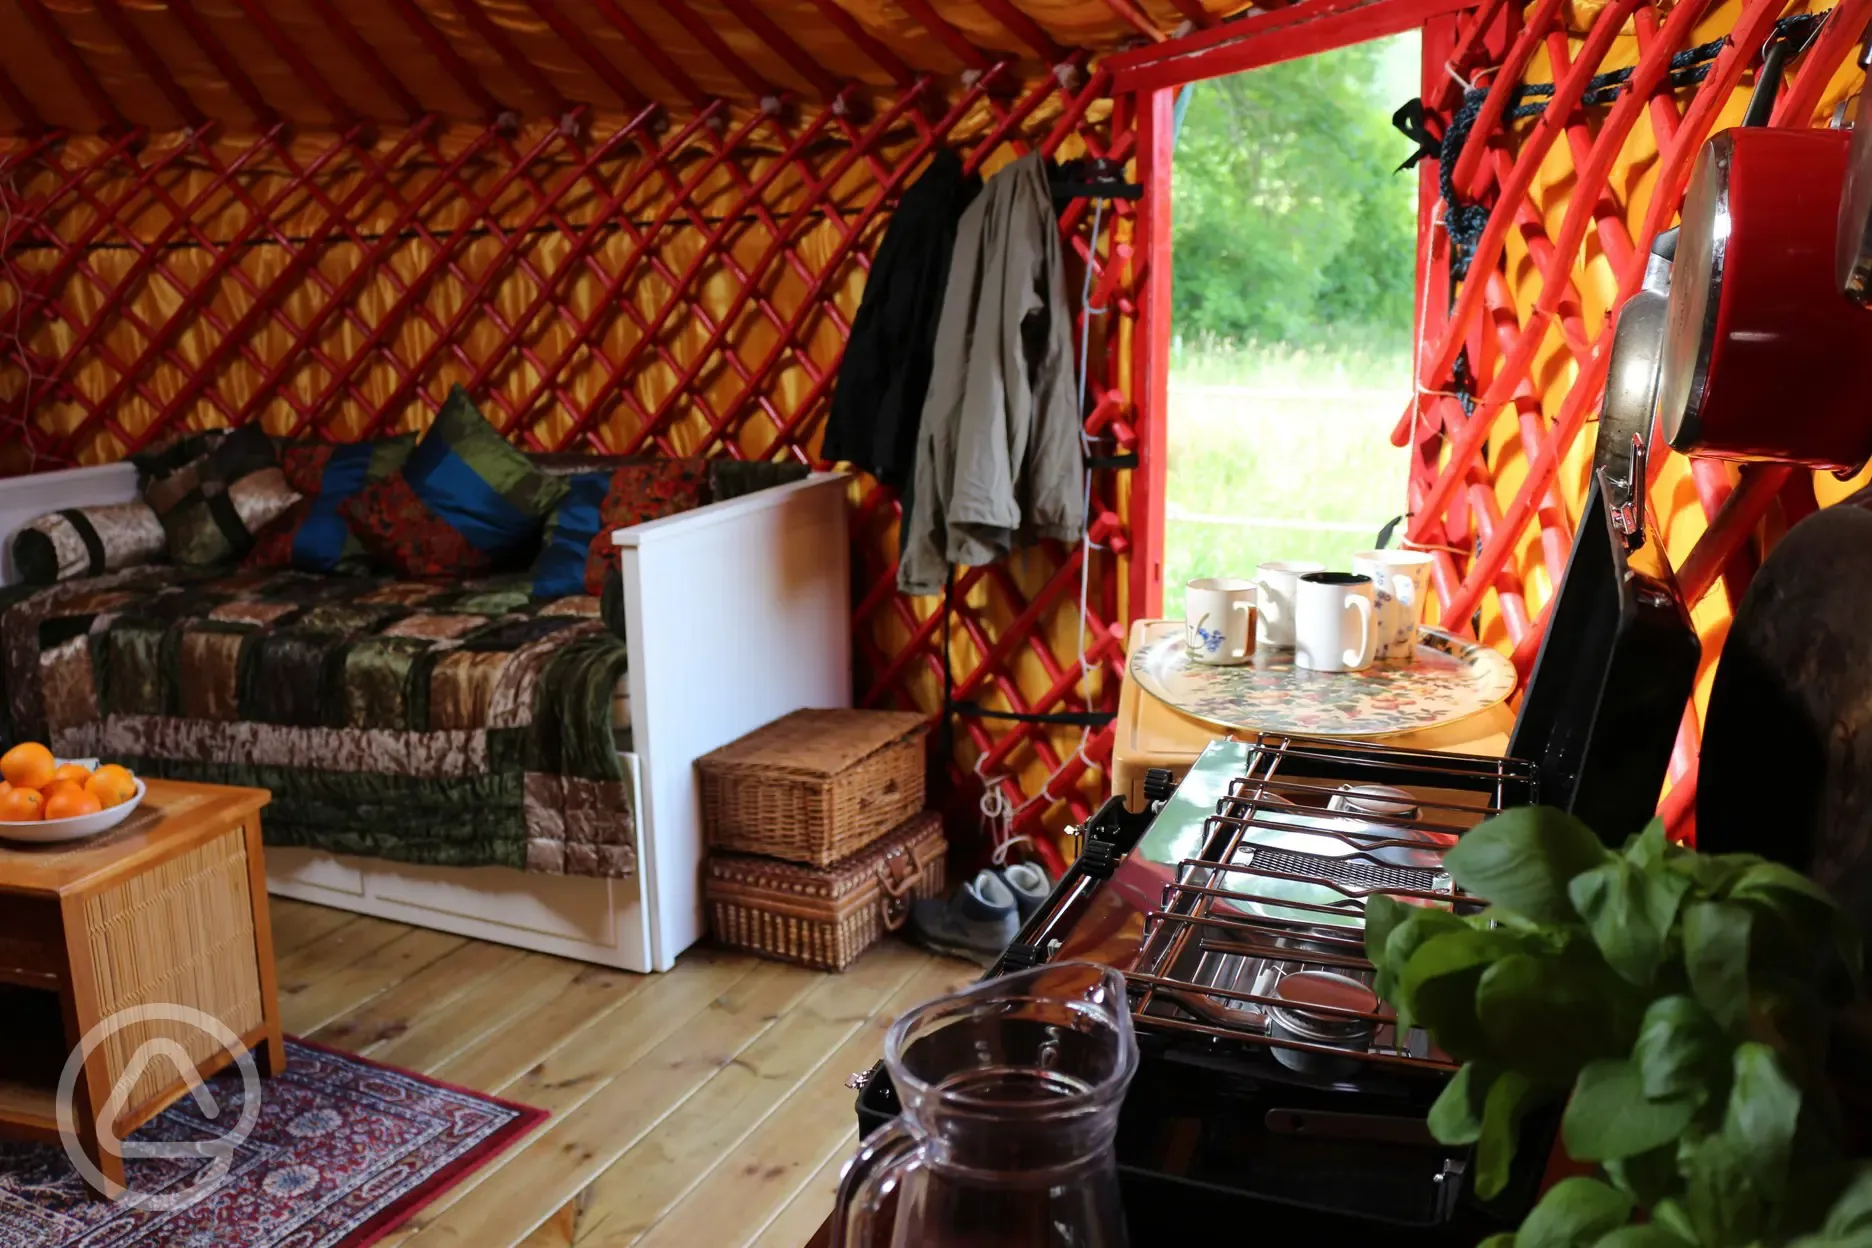 The yurt interior 